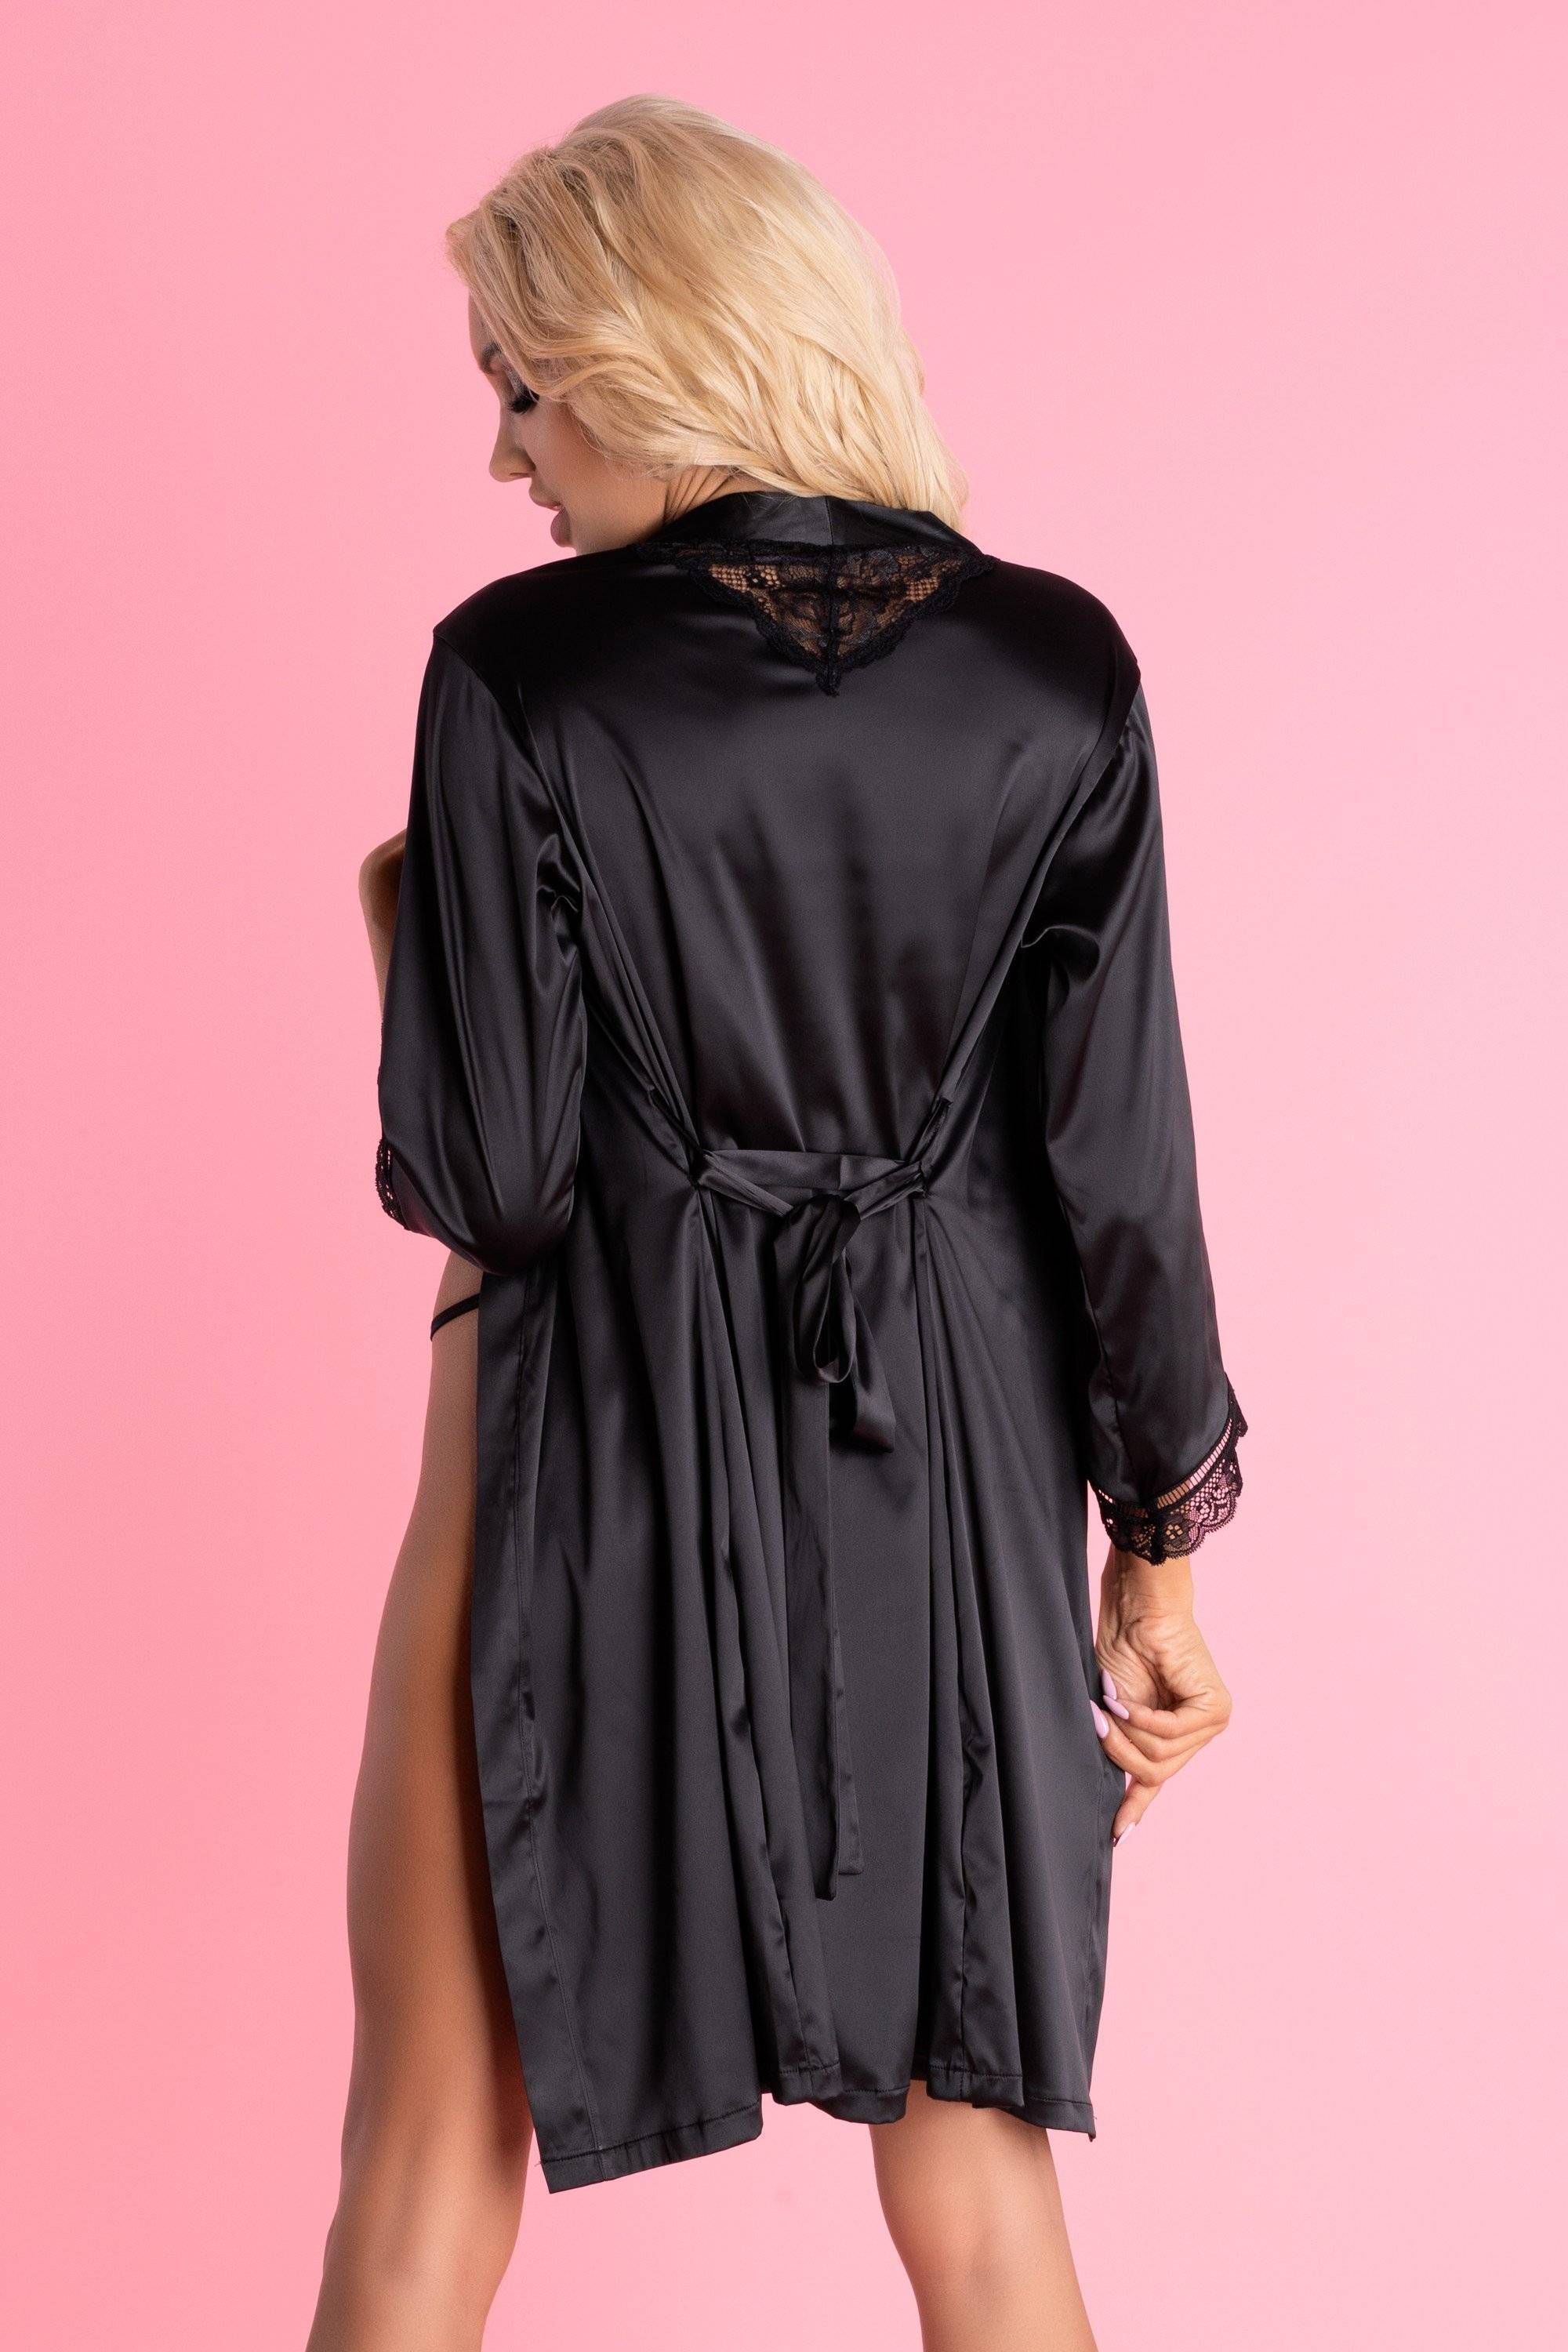 Ariladyen Black Scallo Collection Dressing Gown